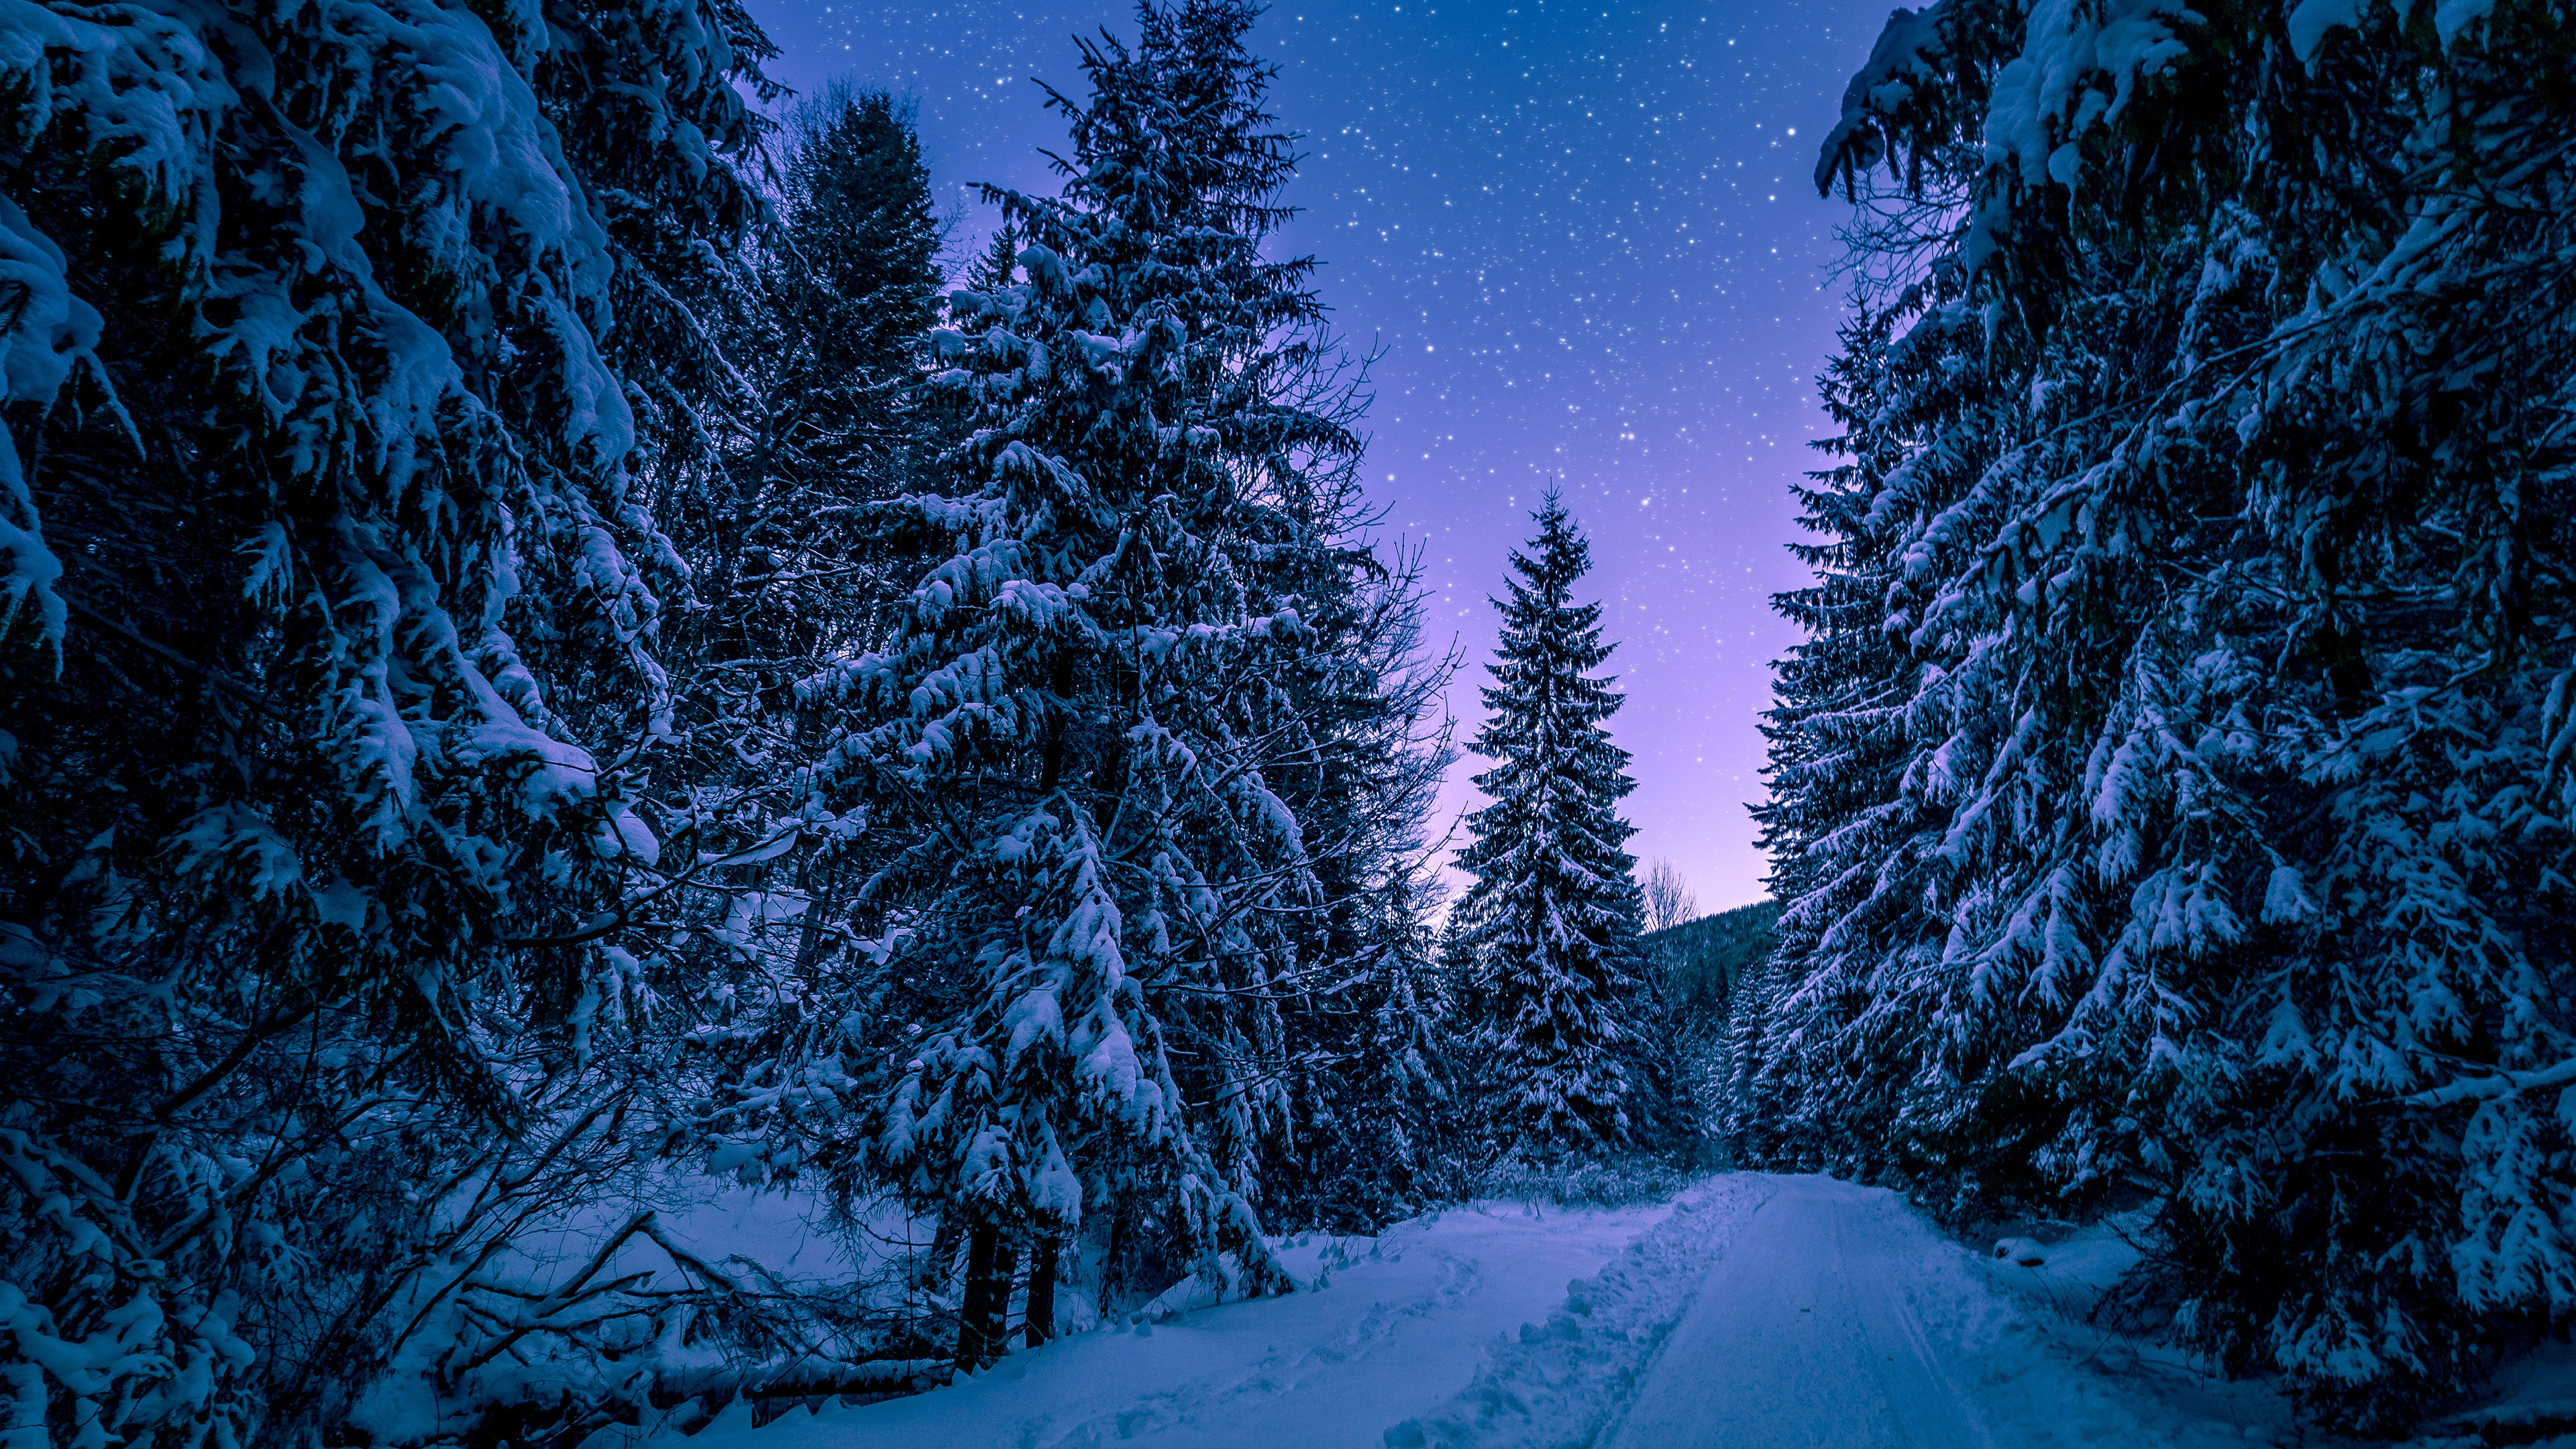 Snowy Trees, Winter, Forest, Frozen, Snow covered, Night Sky, Pine trees, Seasons, 4k Free deskk wallpaper, Ultra HD